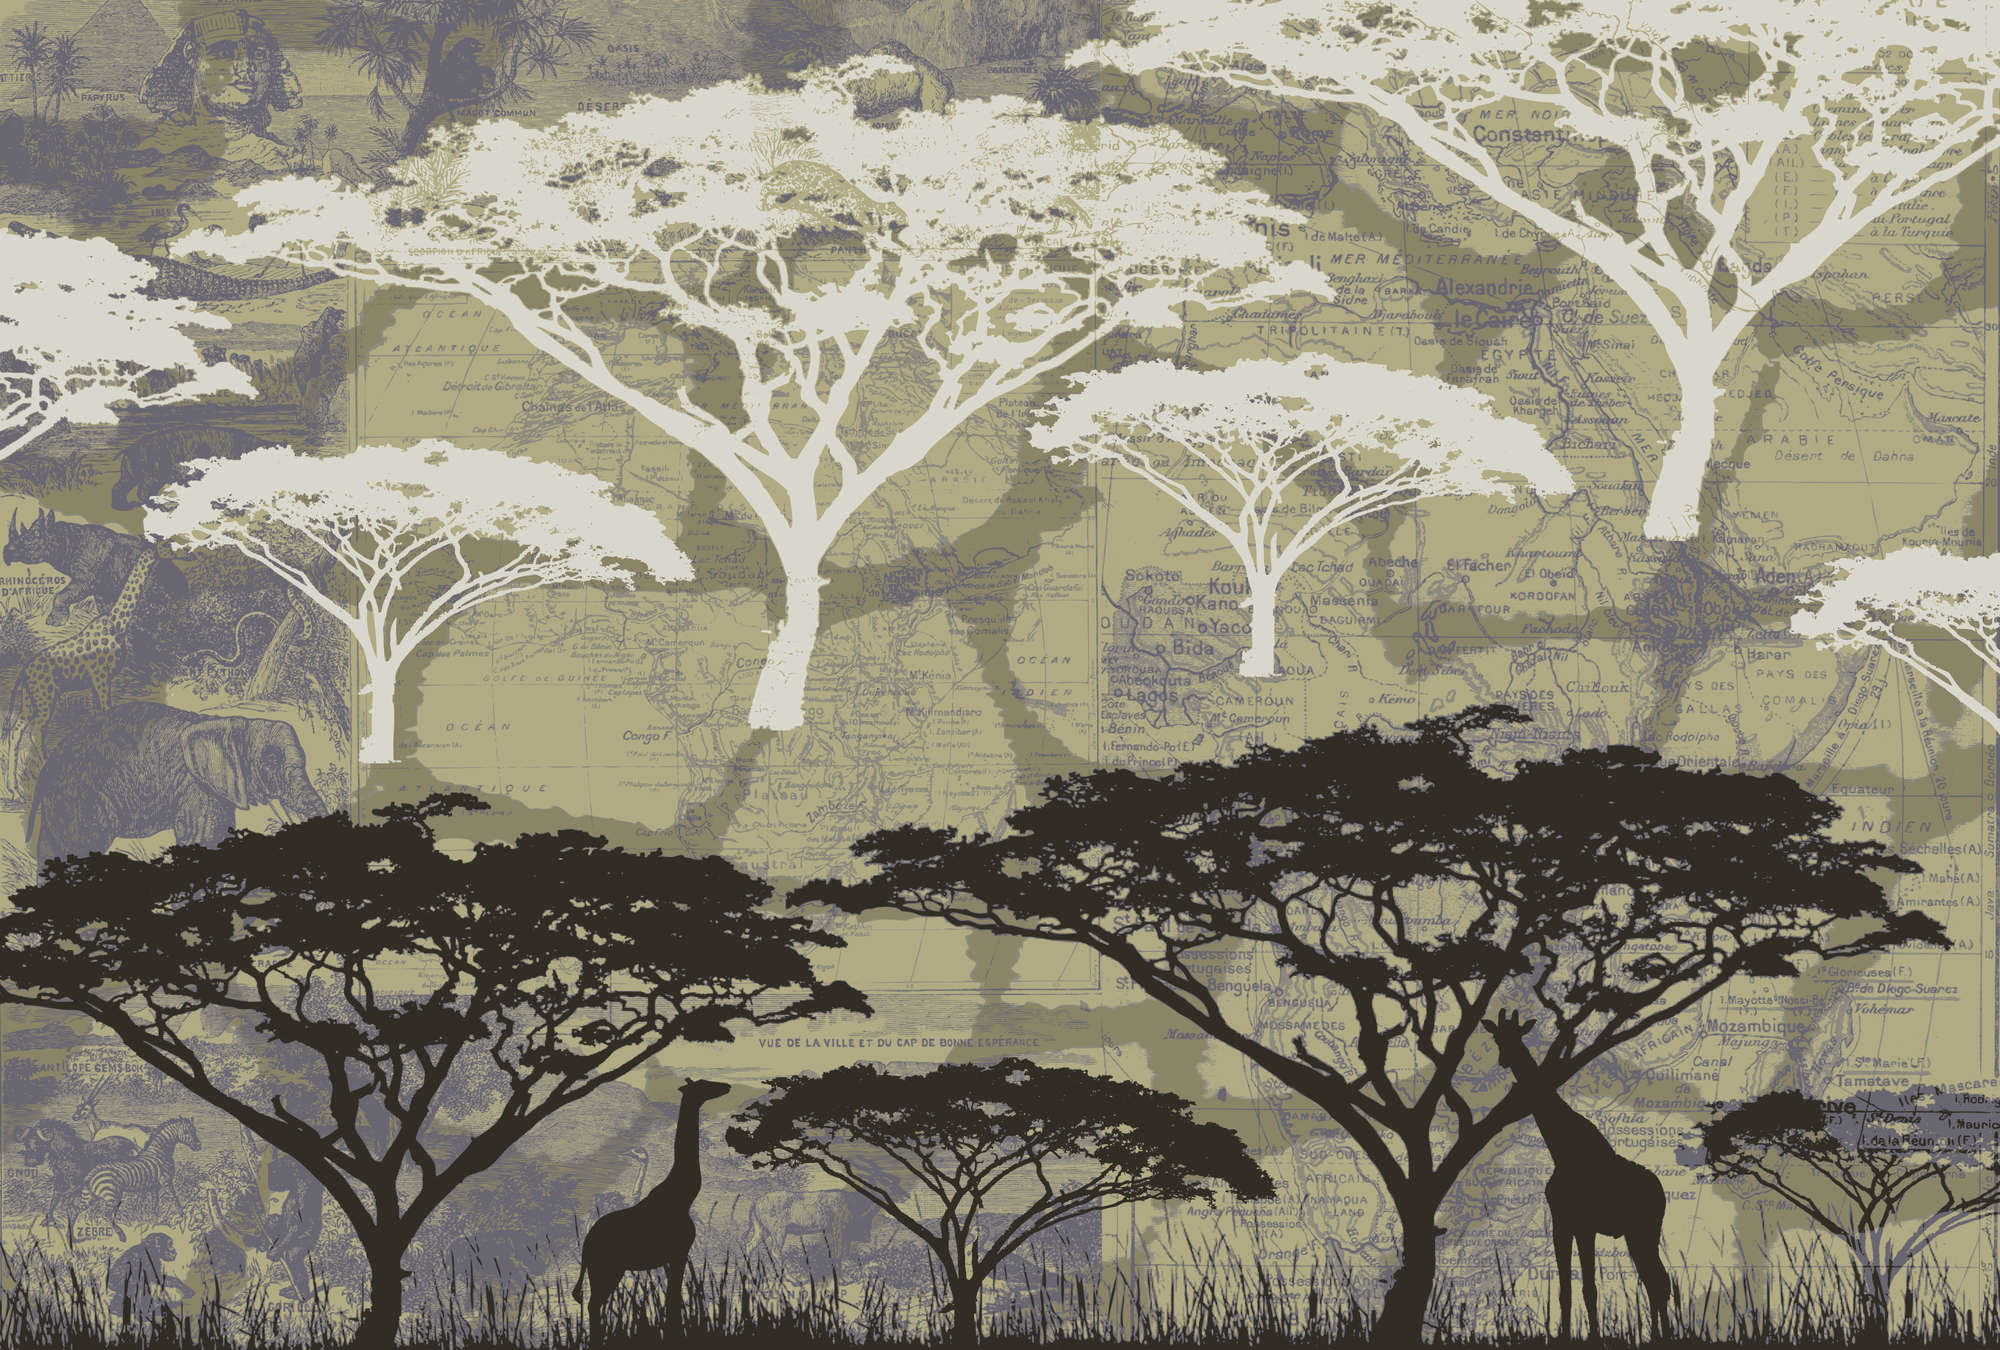             Savannah - African style tree motif mural
        